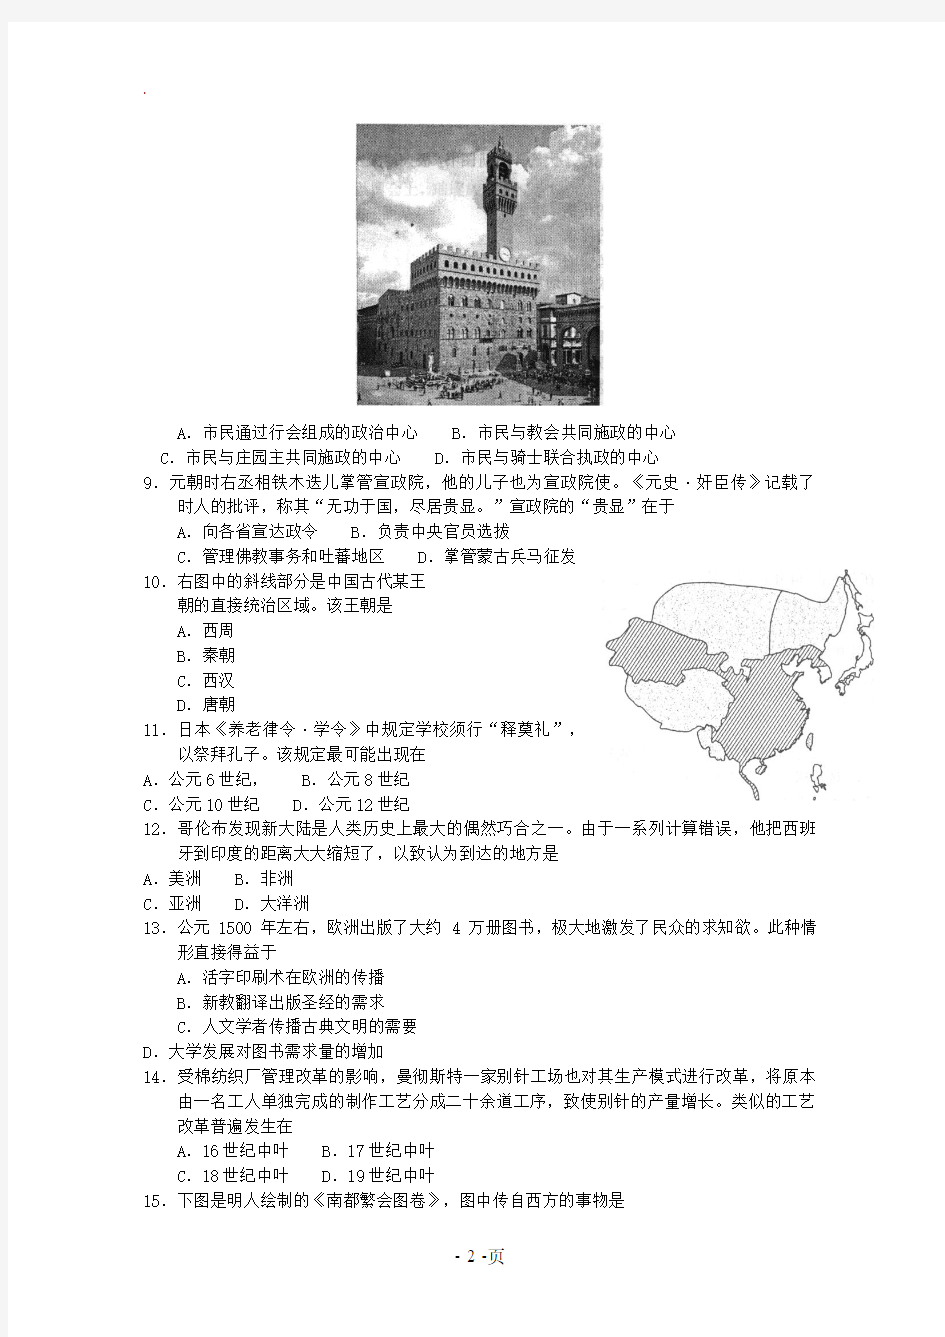 2019年高考真题——历史(上海卷)